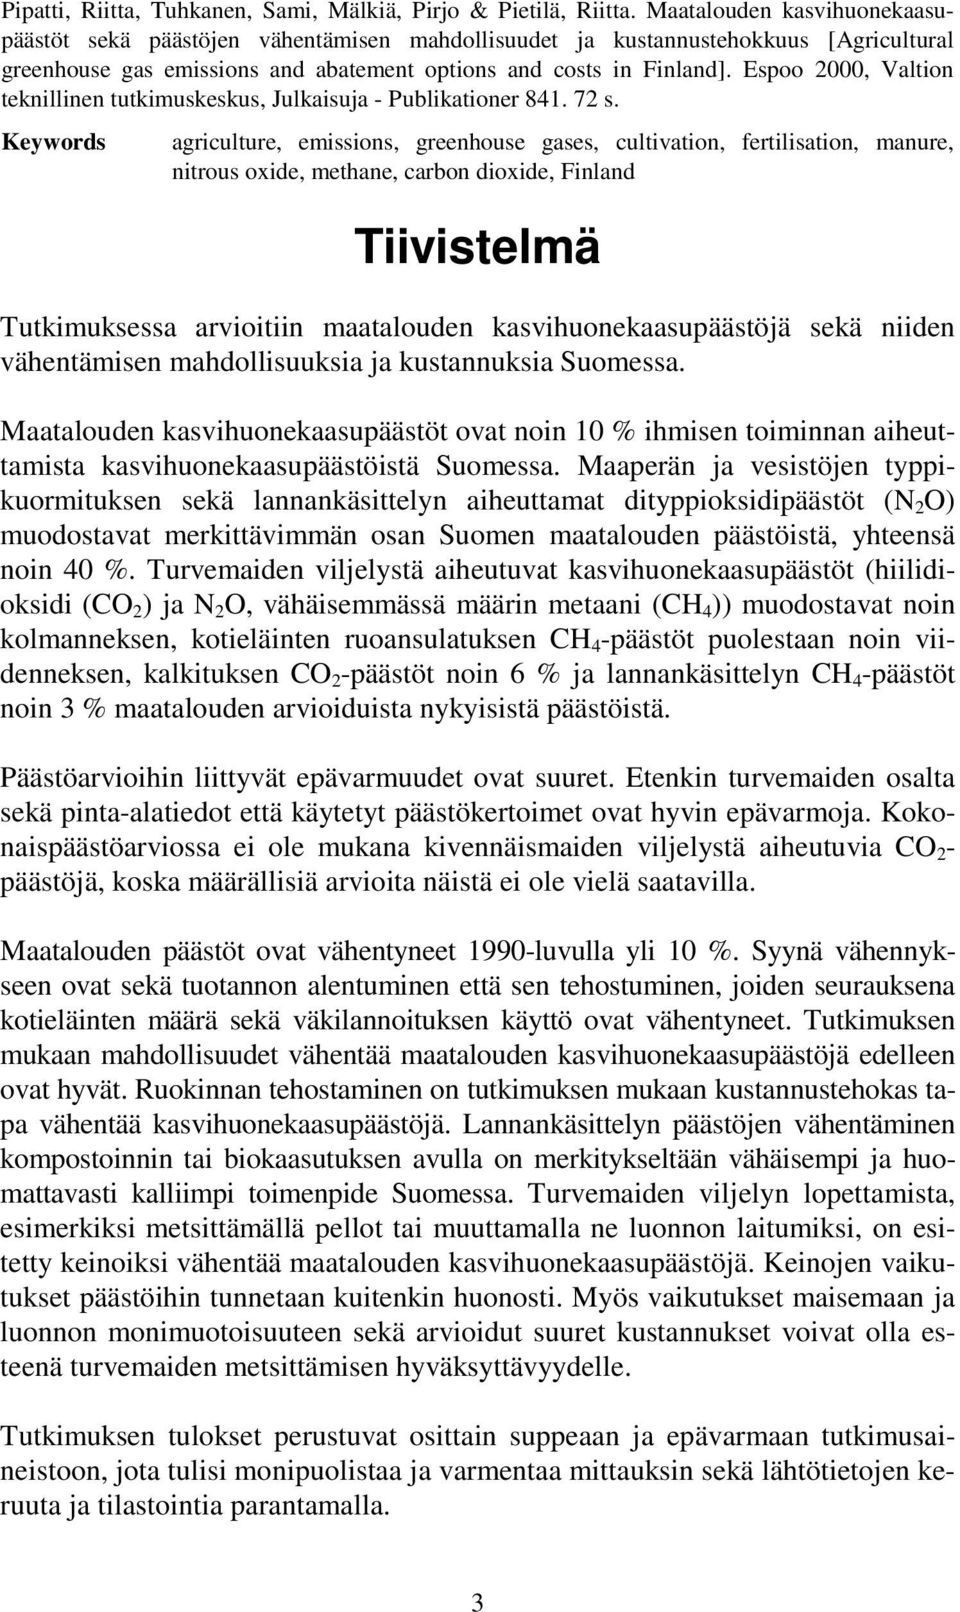 Espoo 2000, Valtion teknillinen tutkimuskeskus, Julkaisuja - Publikationer 841. 72 s.